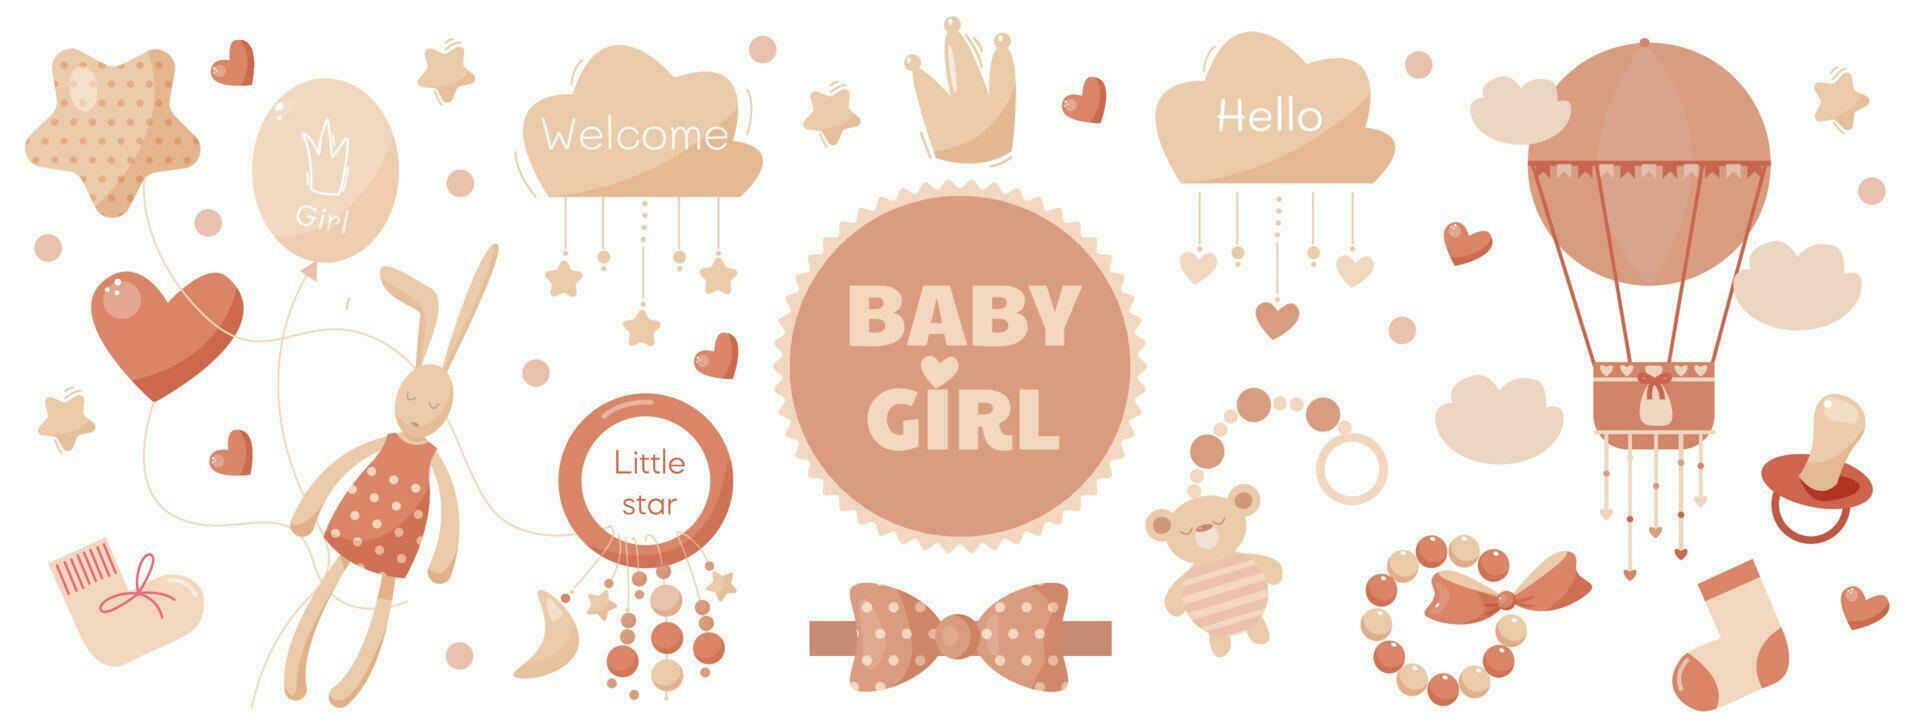 vector conjunto rosado juguetes para bebé niña con lote de bonito decoración